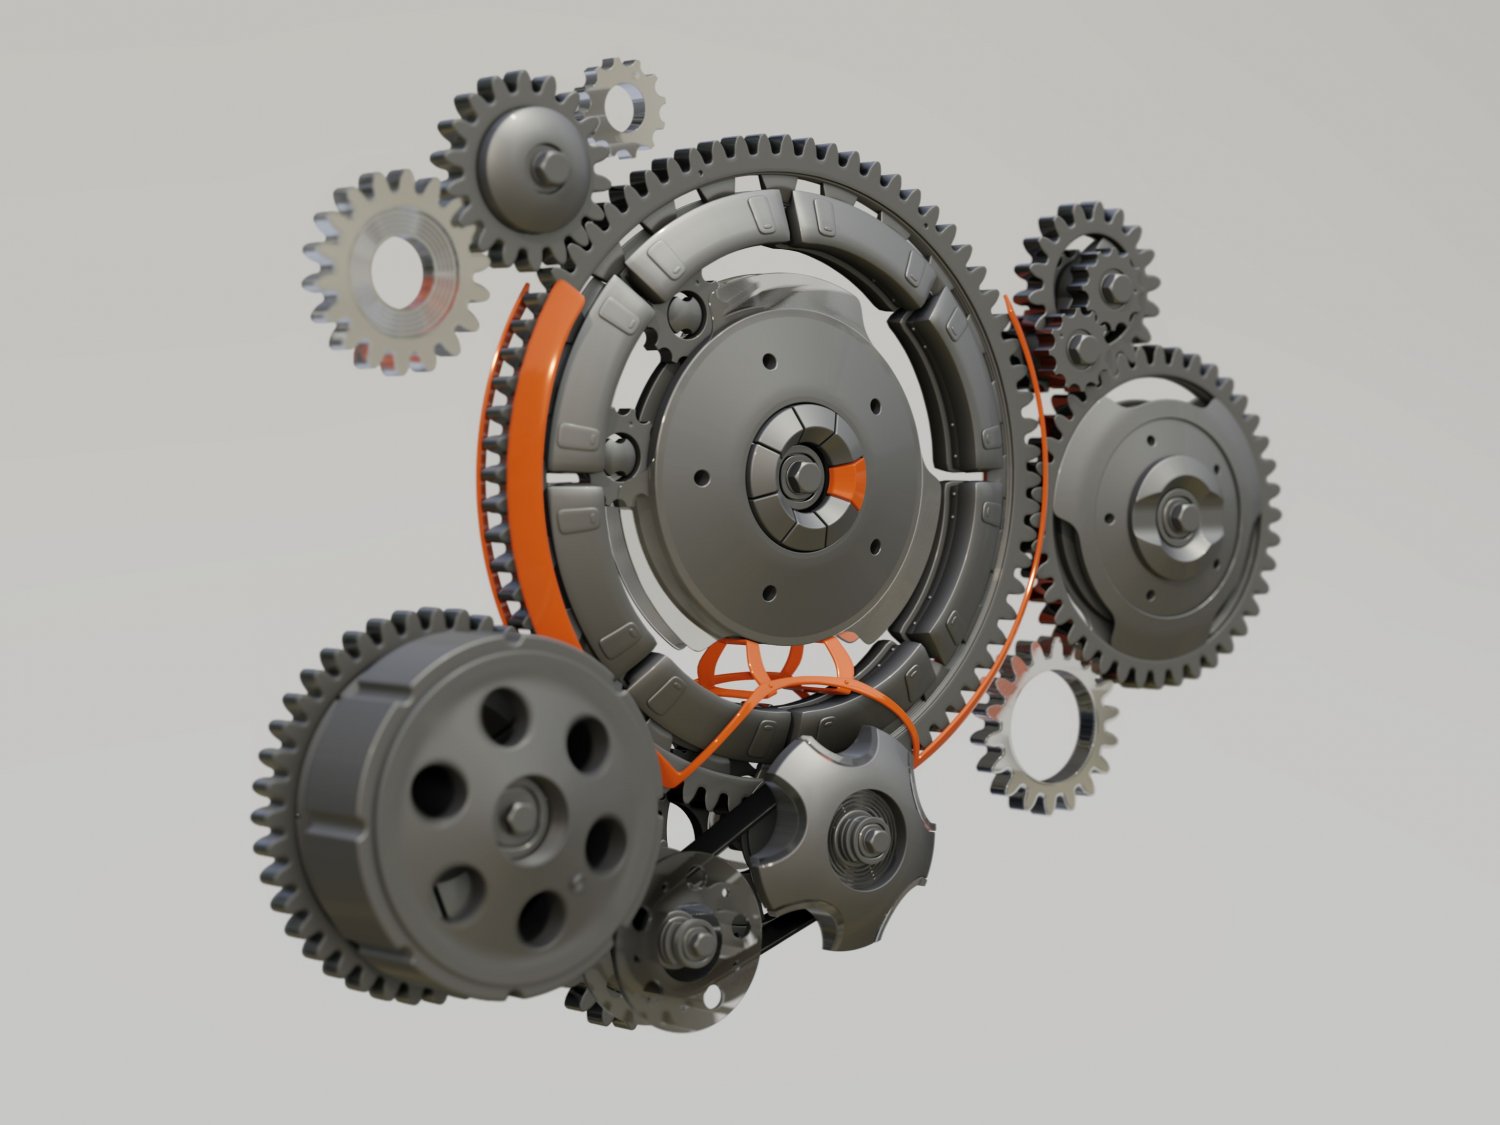 Gears - 3D Model by 3dstudio